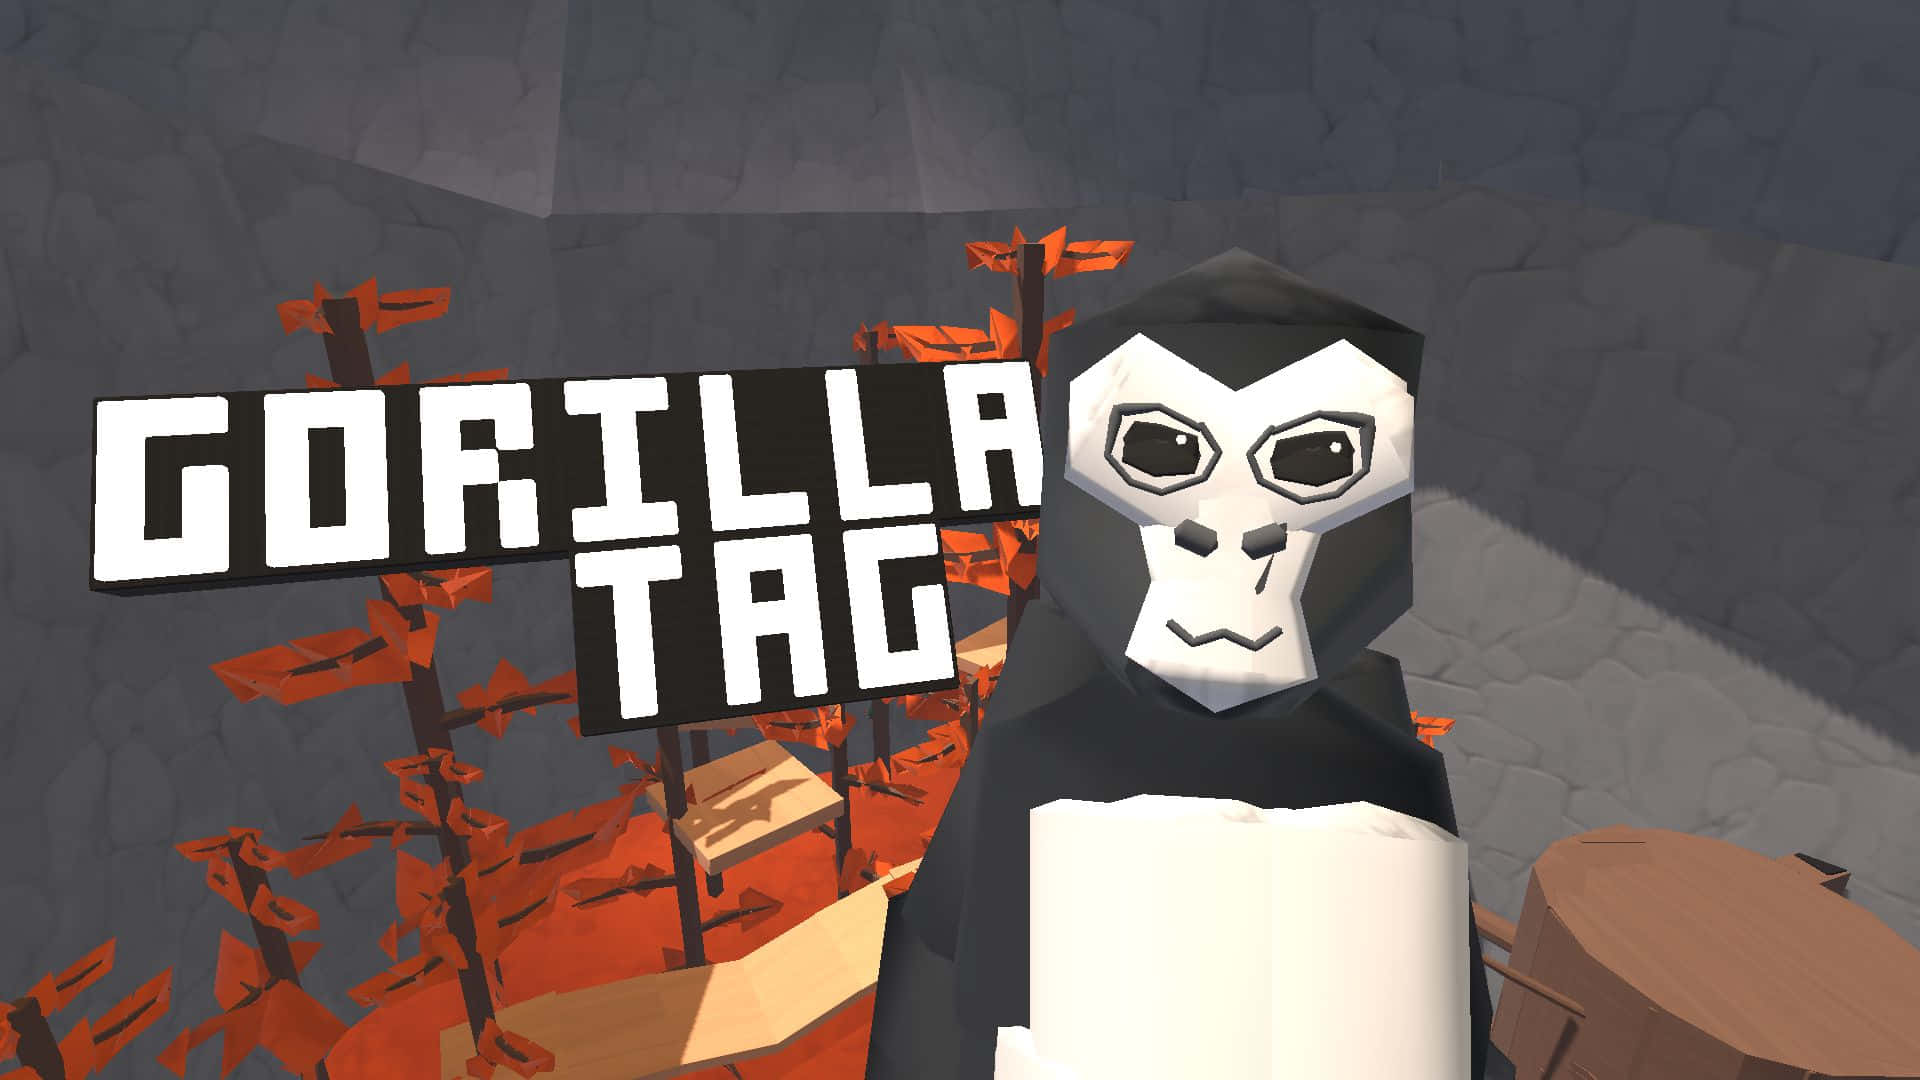 Gorilla Tags Horror Game Got a UPDATE 